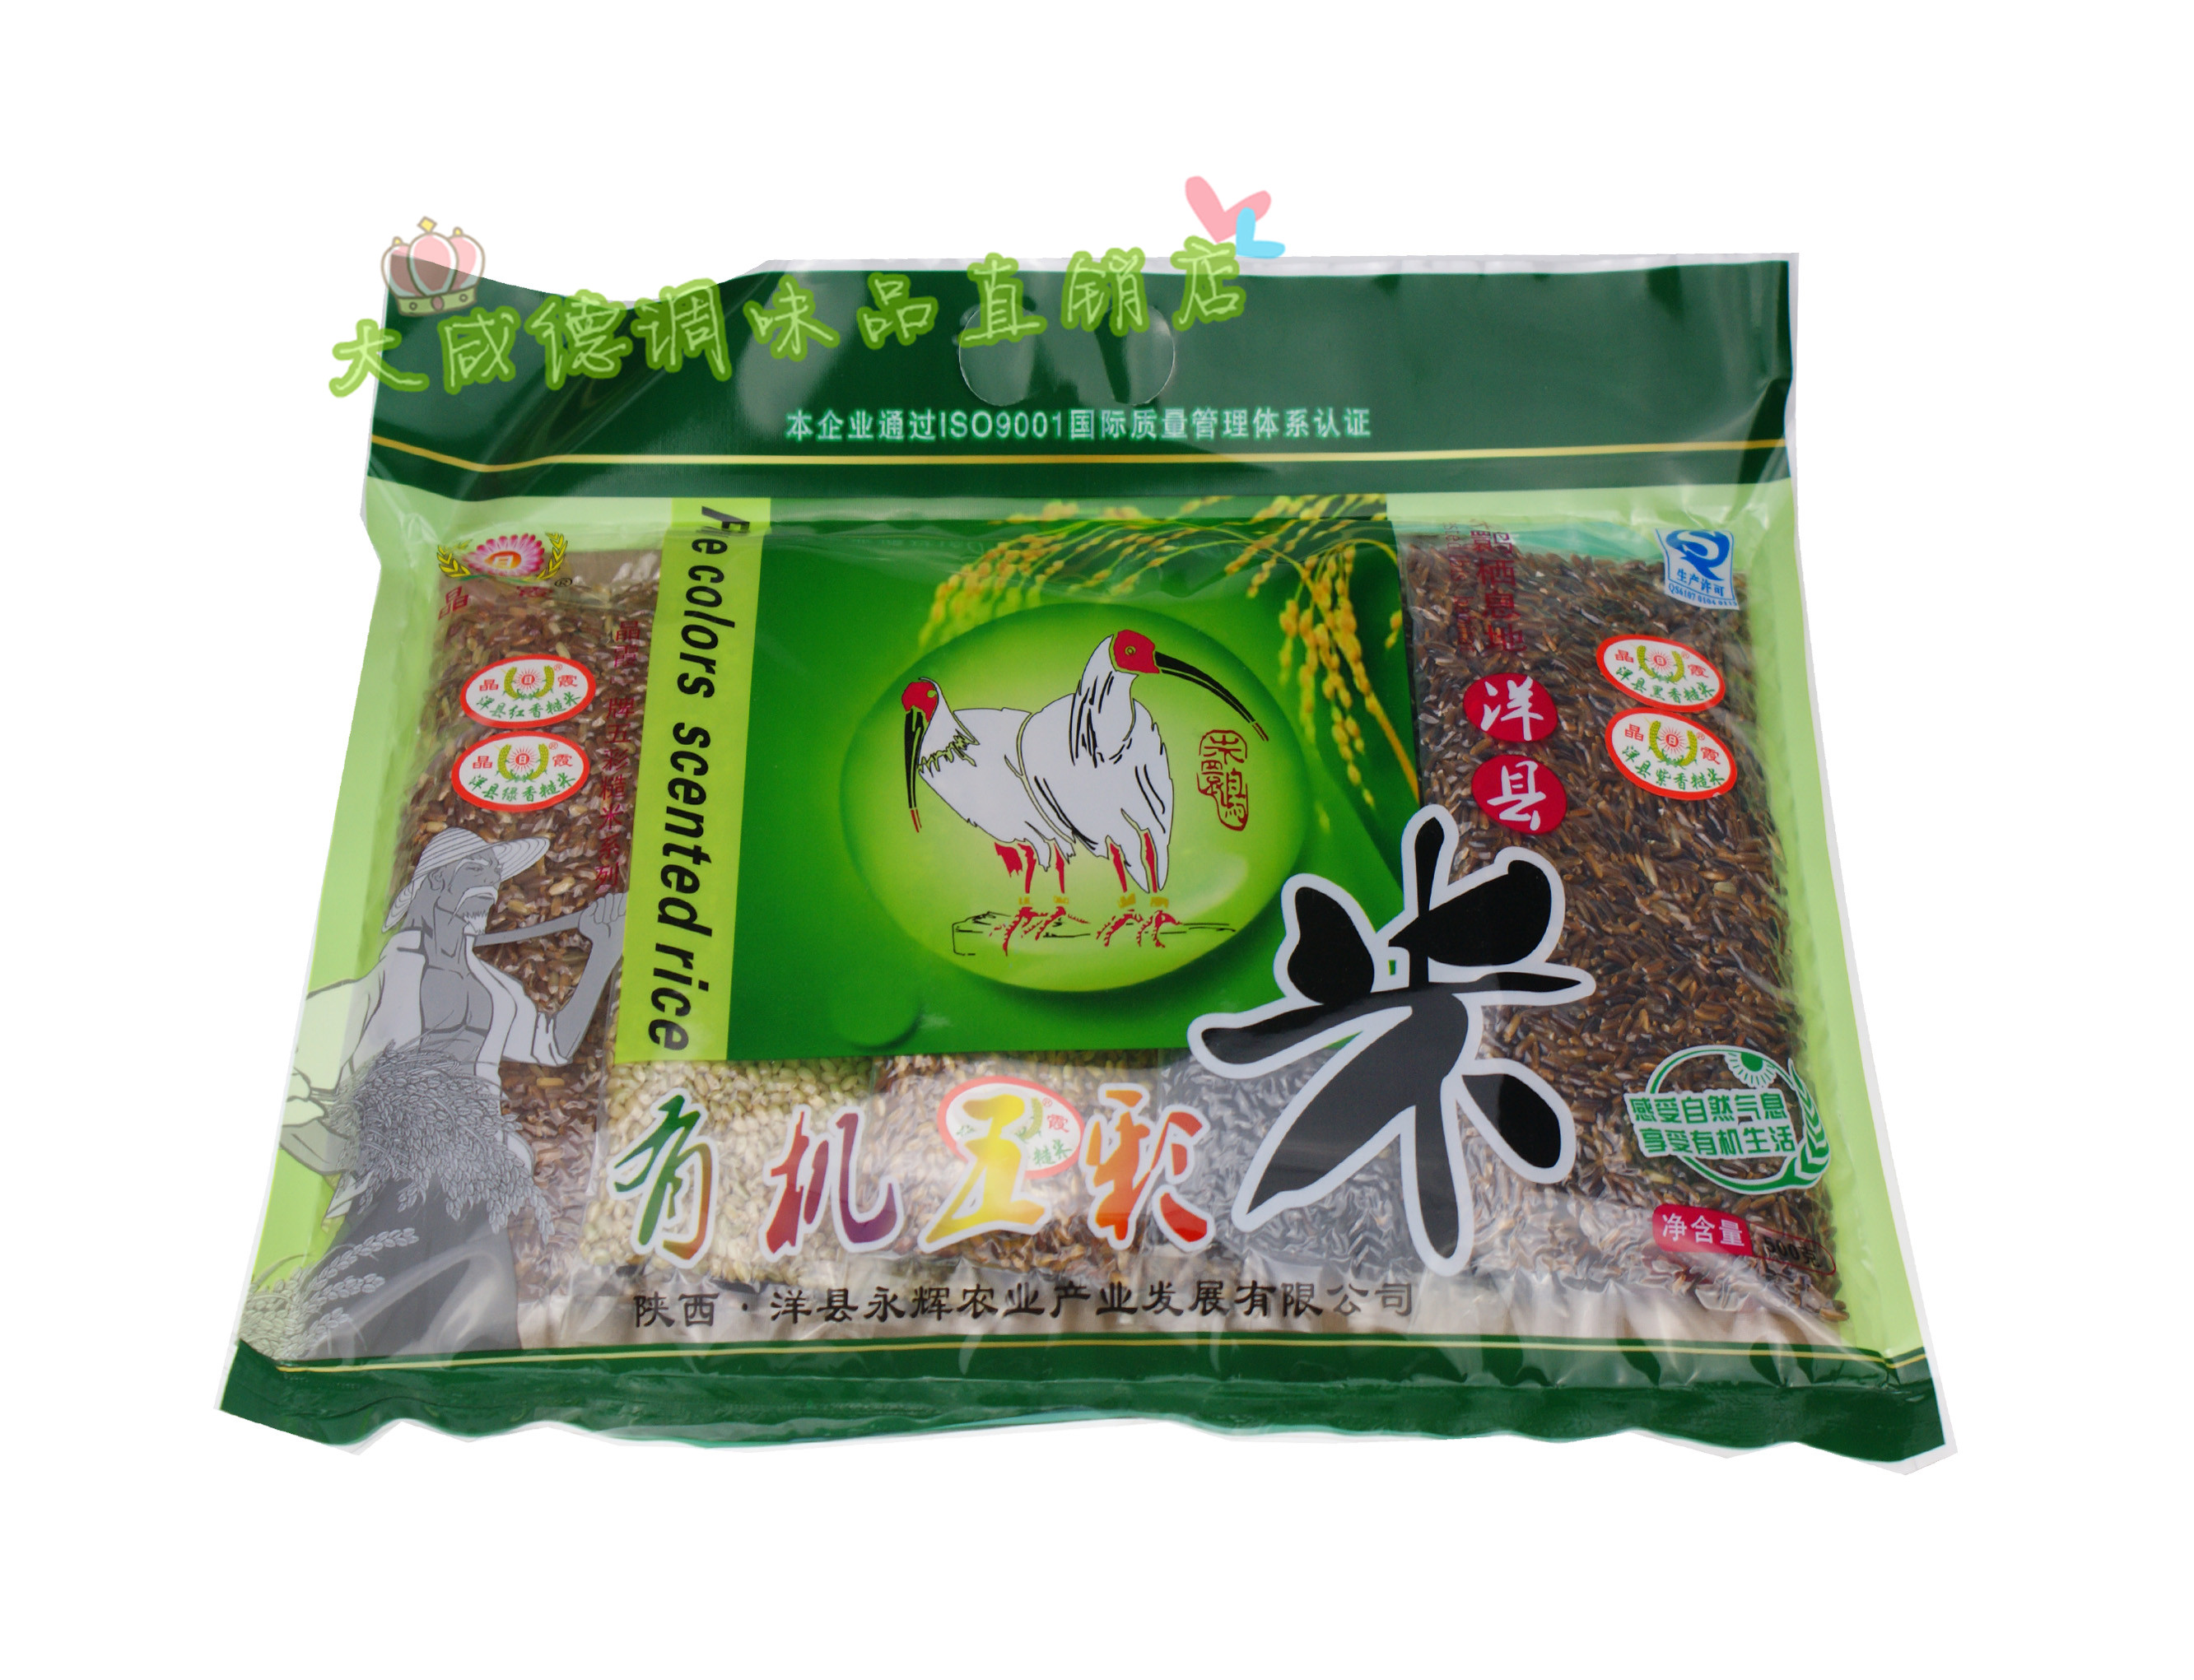 陕西汉中特产 洋县有机五彩米红绿紫黄黑米五色香糙米 零添加剂